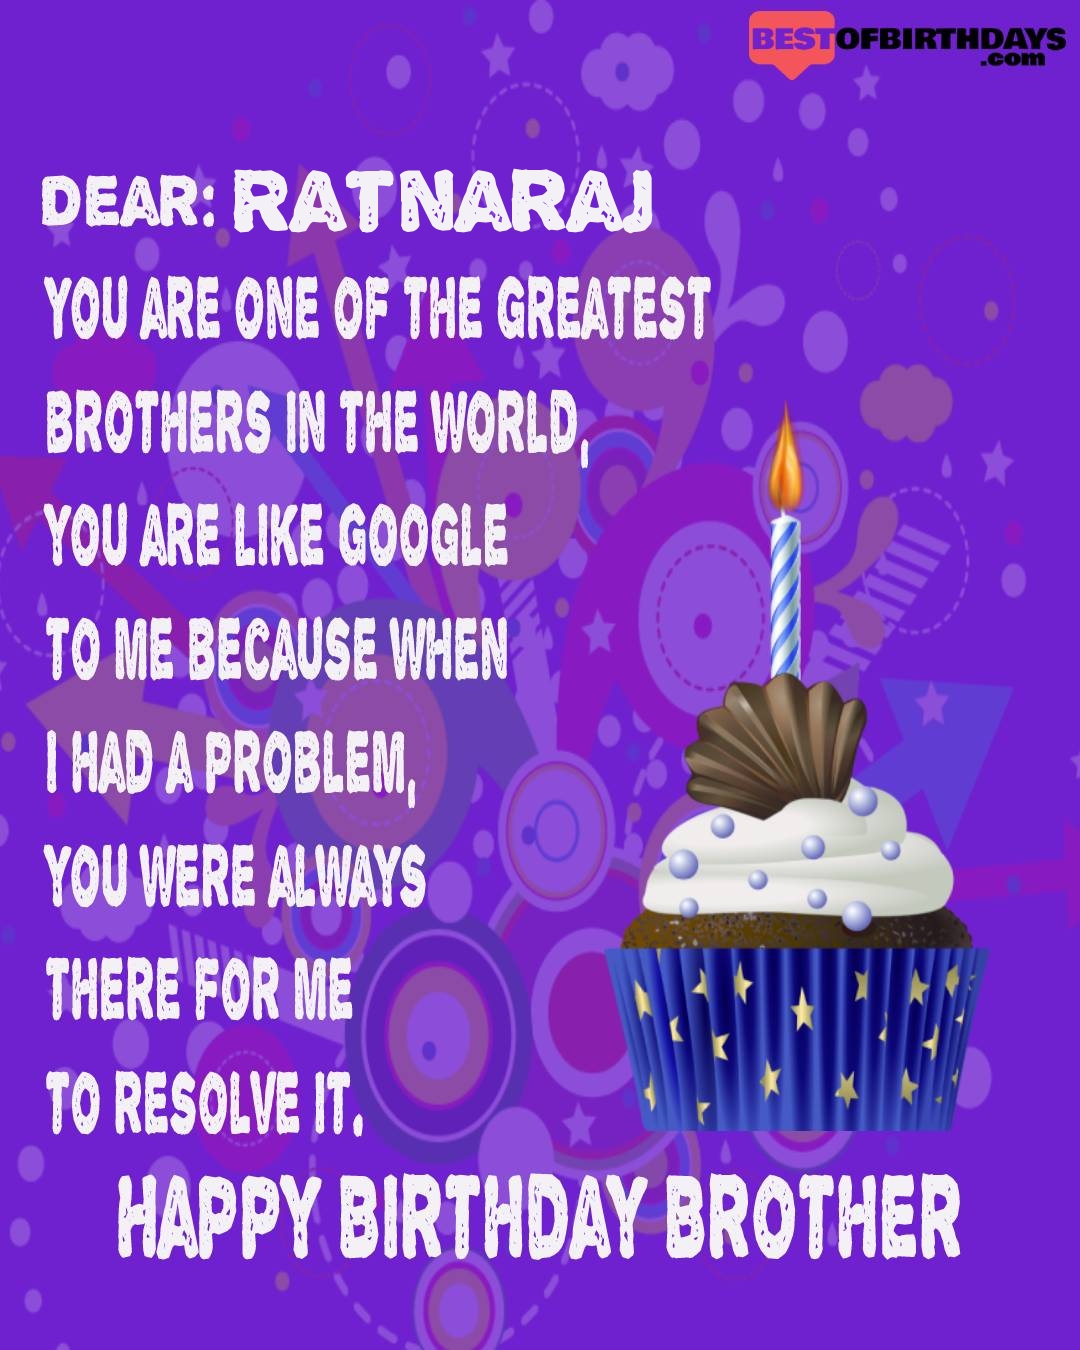 Happy birthday ratnaraj bhai brother bro